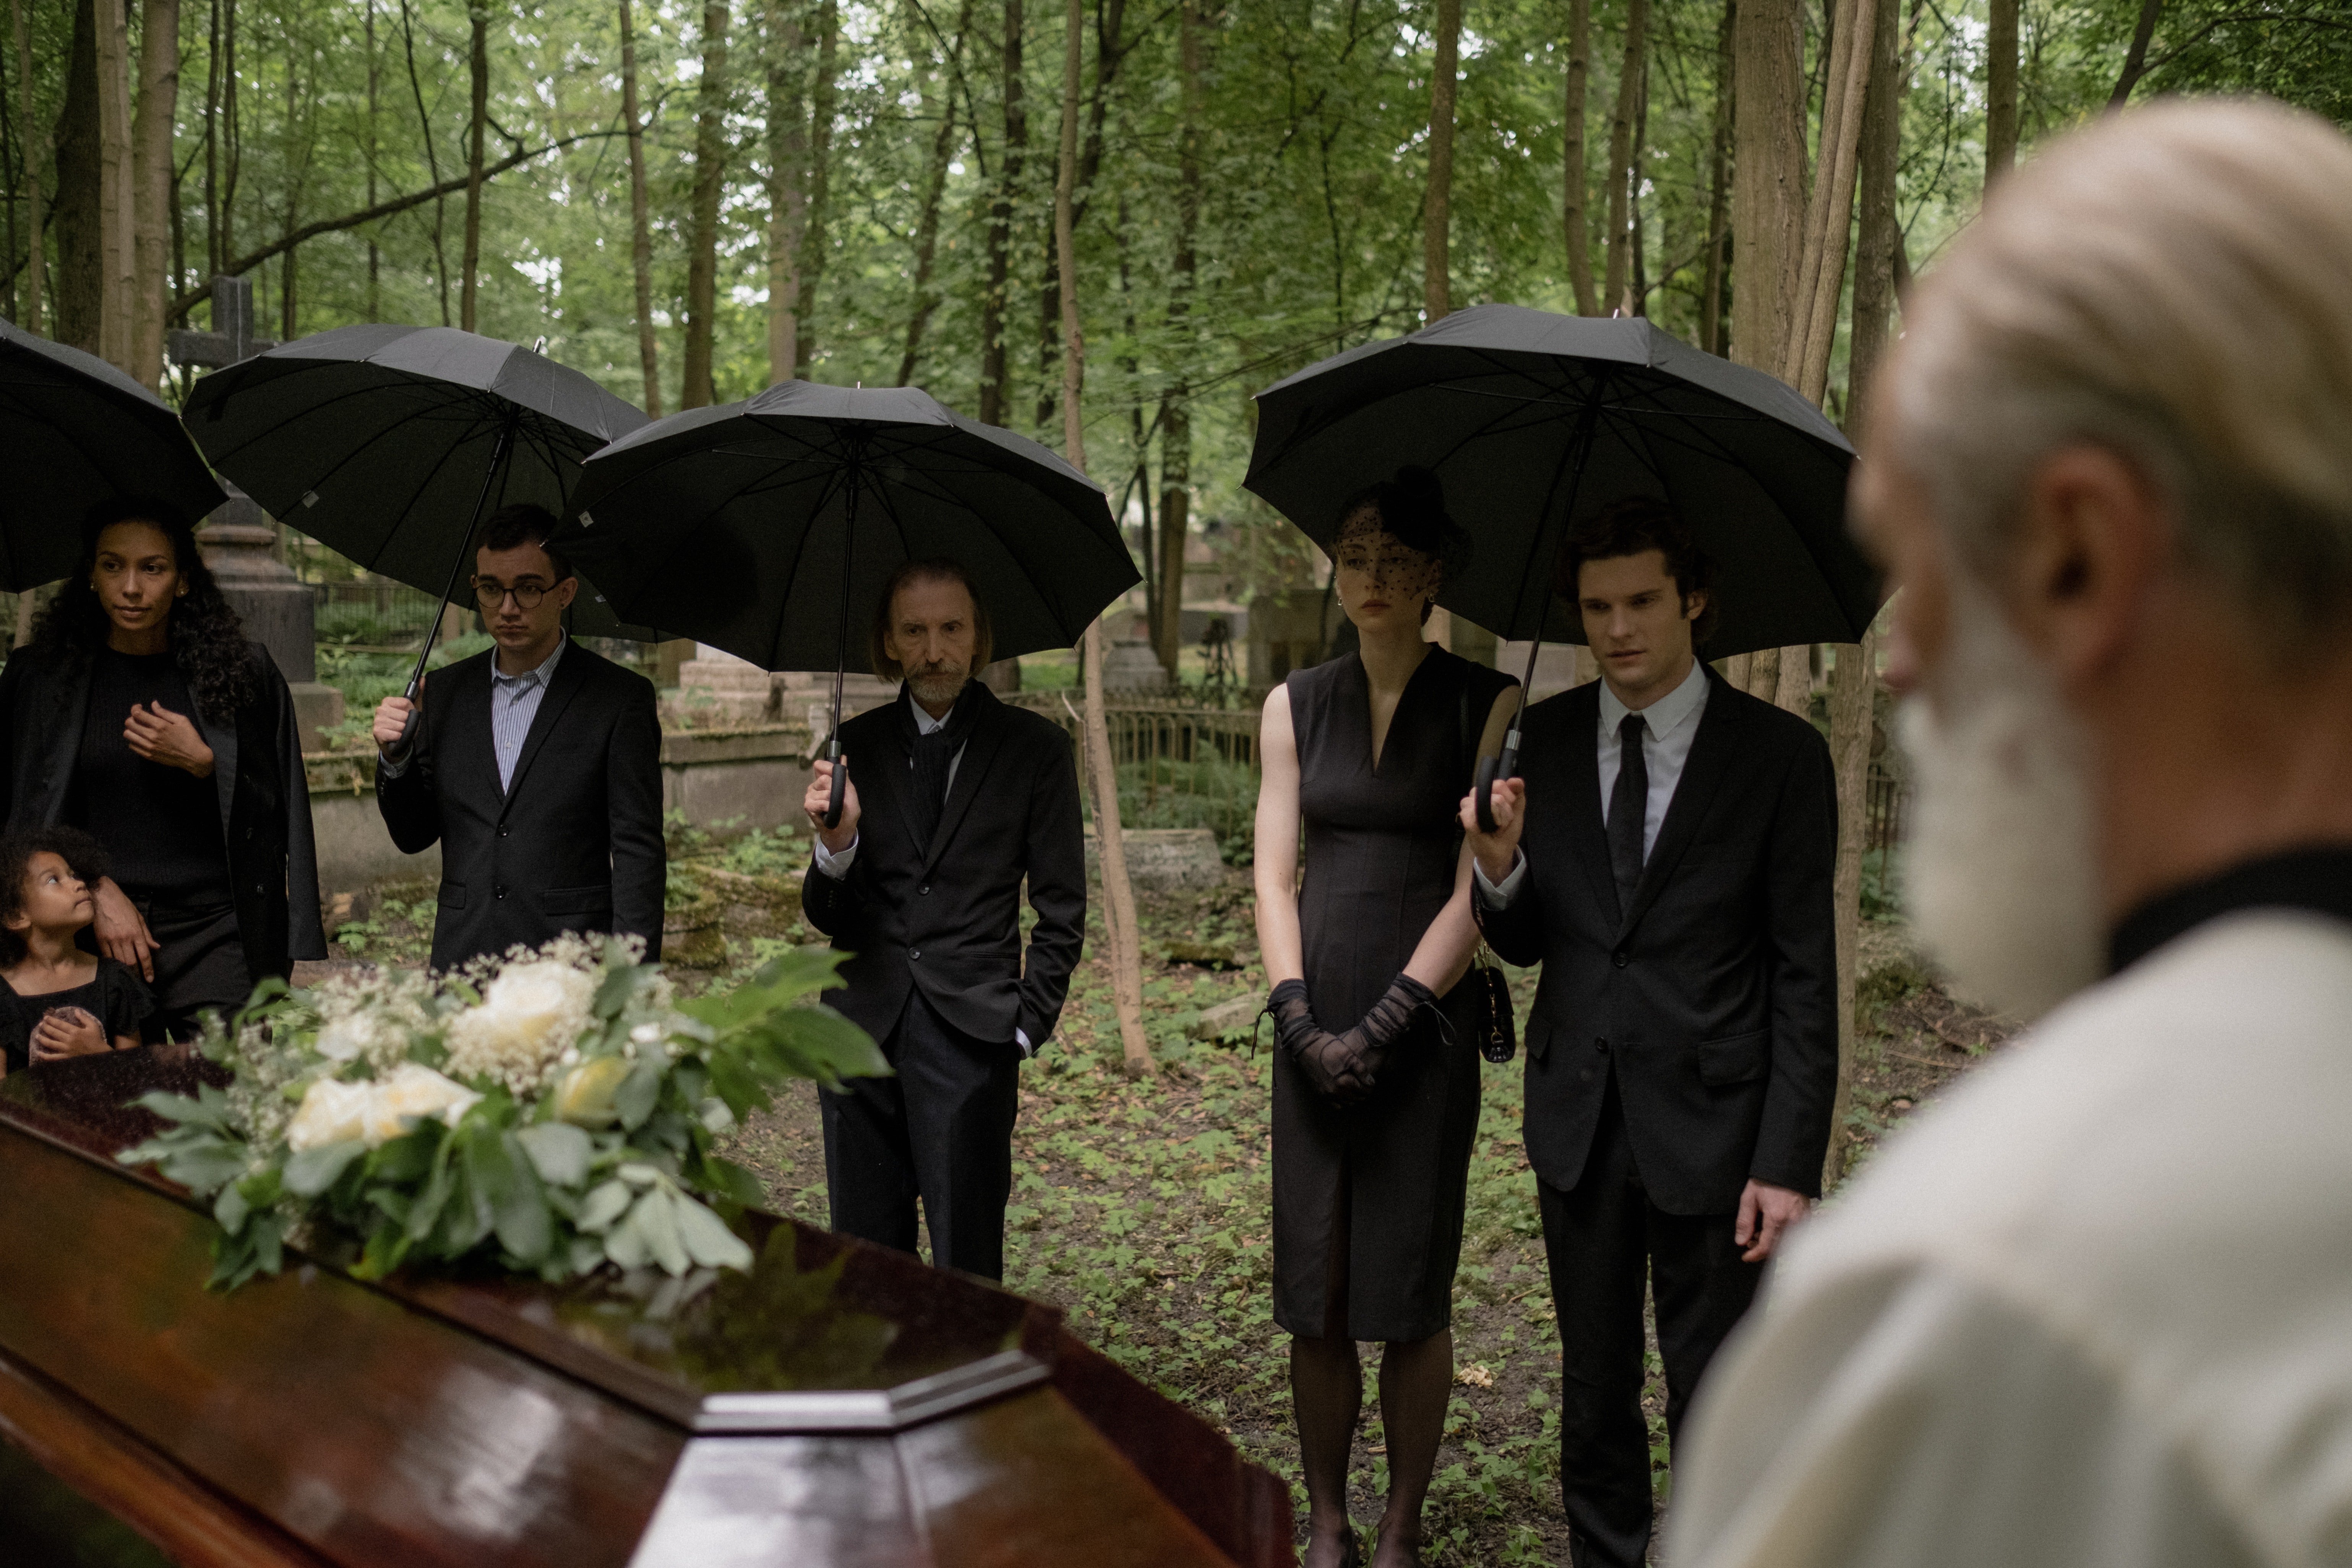 Herr Olsen kümmerte sich um Elizabeths Beerdigung. | Quelle: Pexels